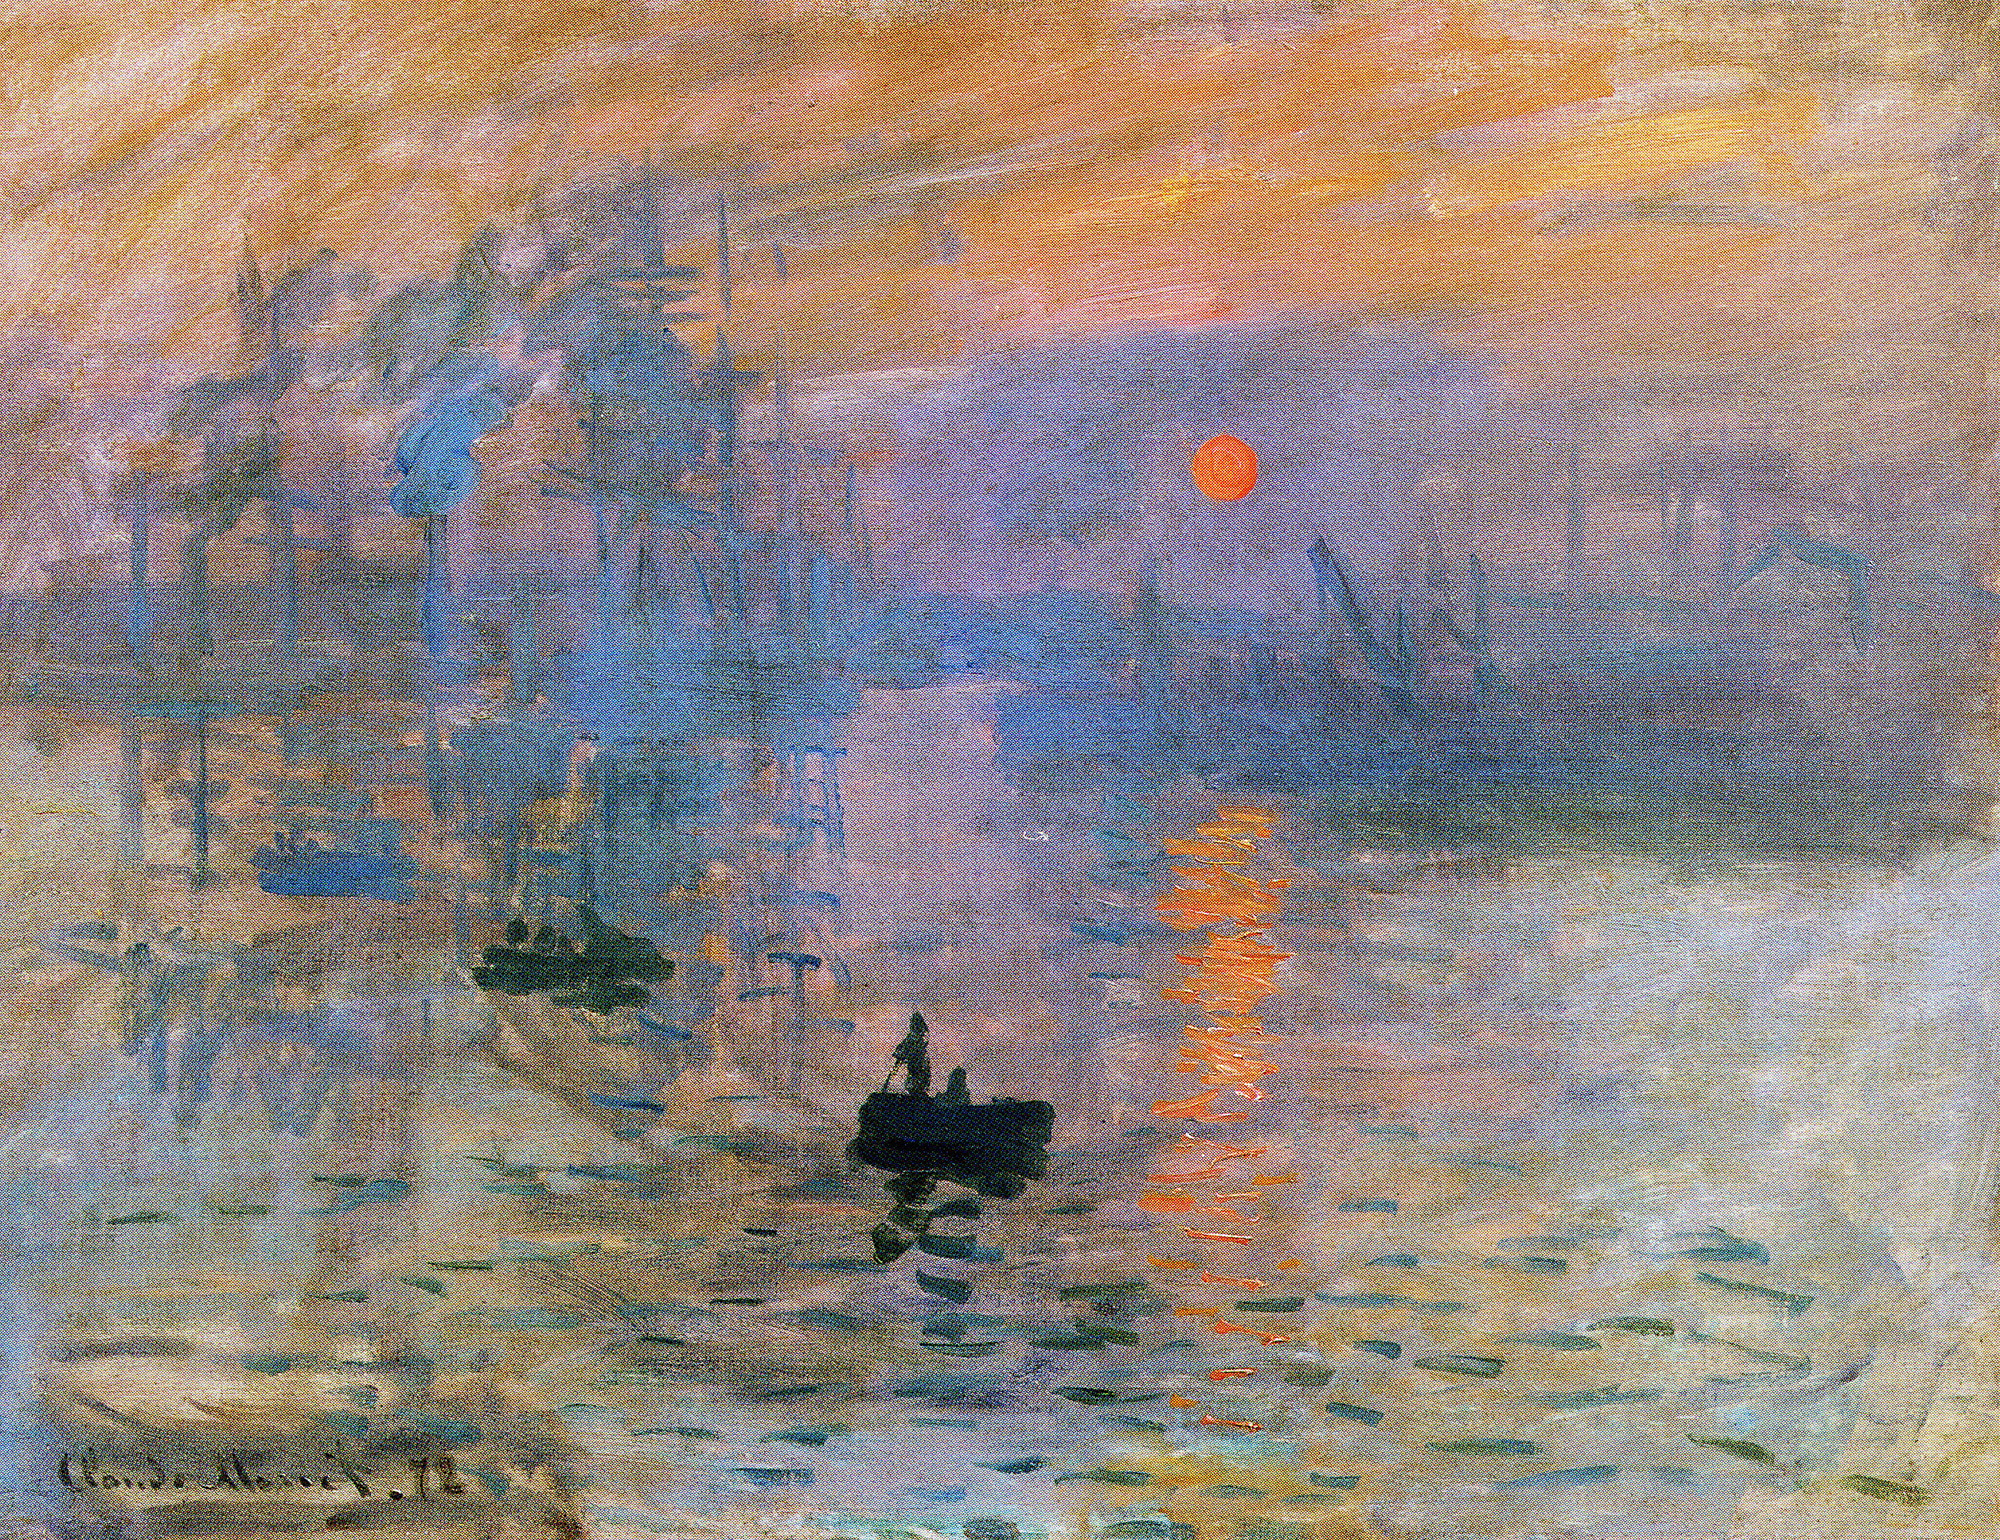 Claude Monet, Impression, Sunrise, 1872-74